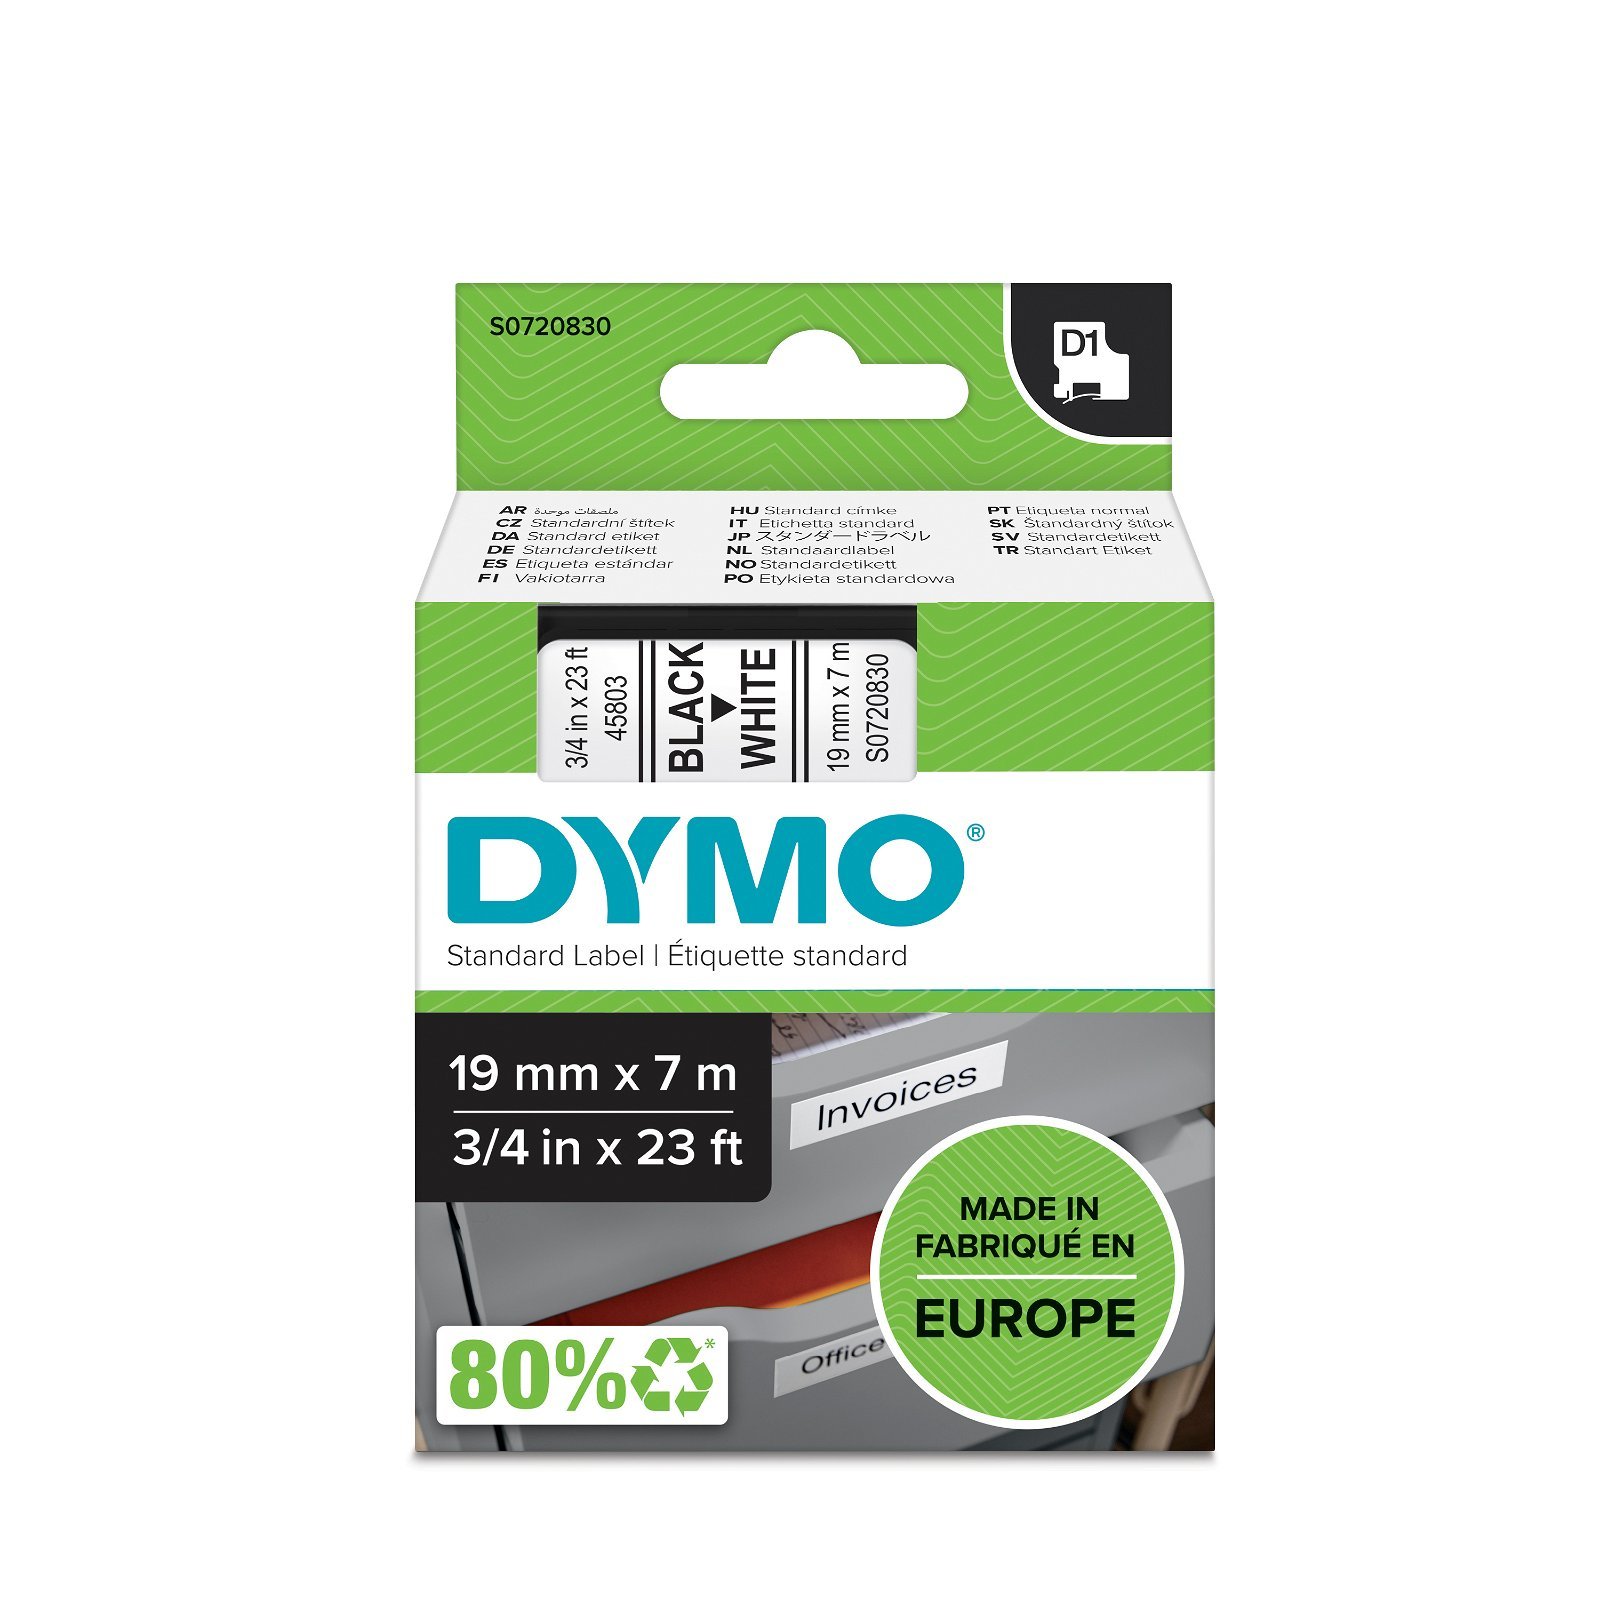 Dymo D1 standard tapekasette 19 mm sort;hvid Polyester